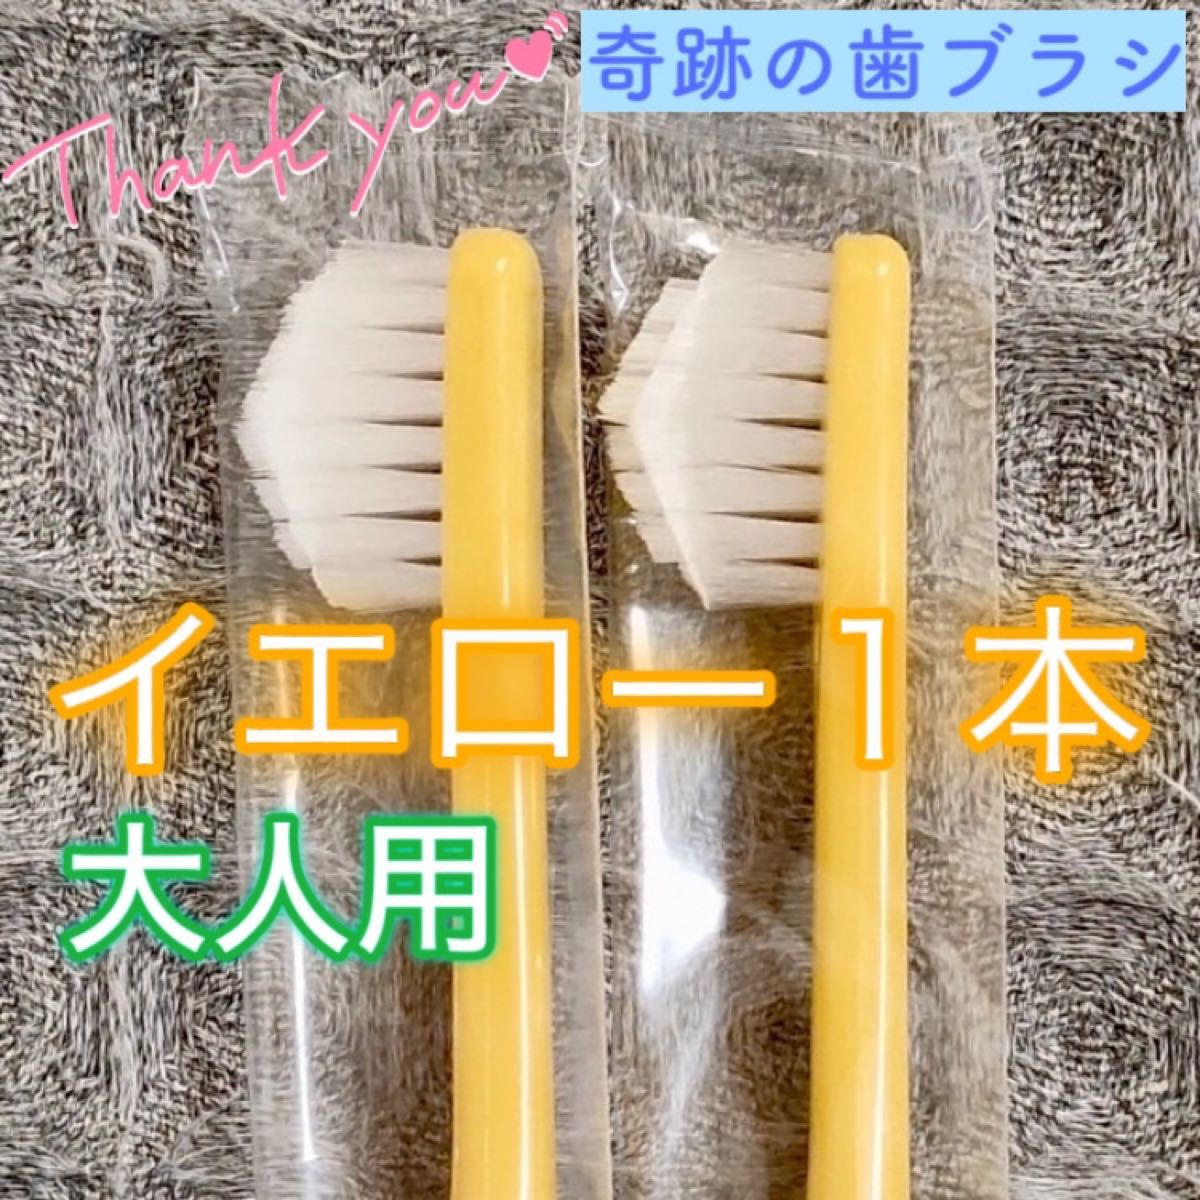 【先約】hana様 リクエスト 3点 まとめ商品 奇跡の歯ブラシ